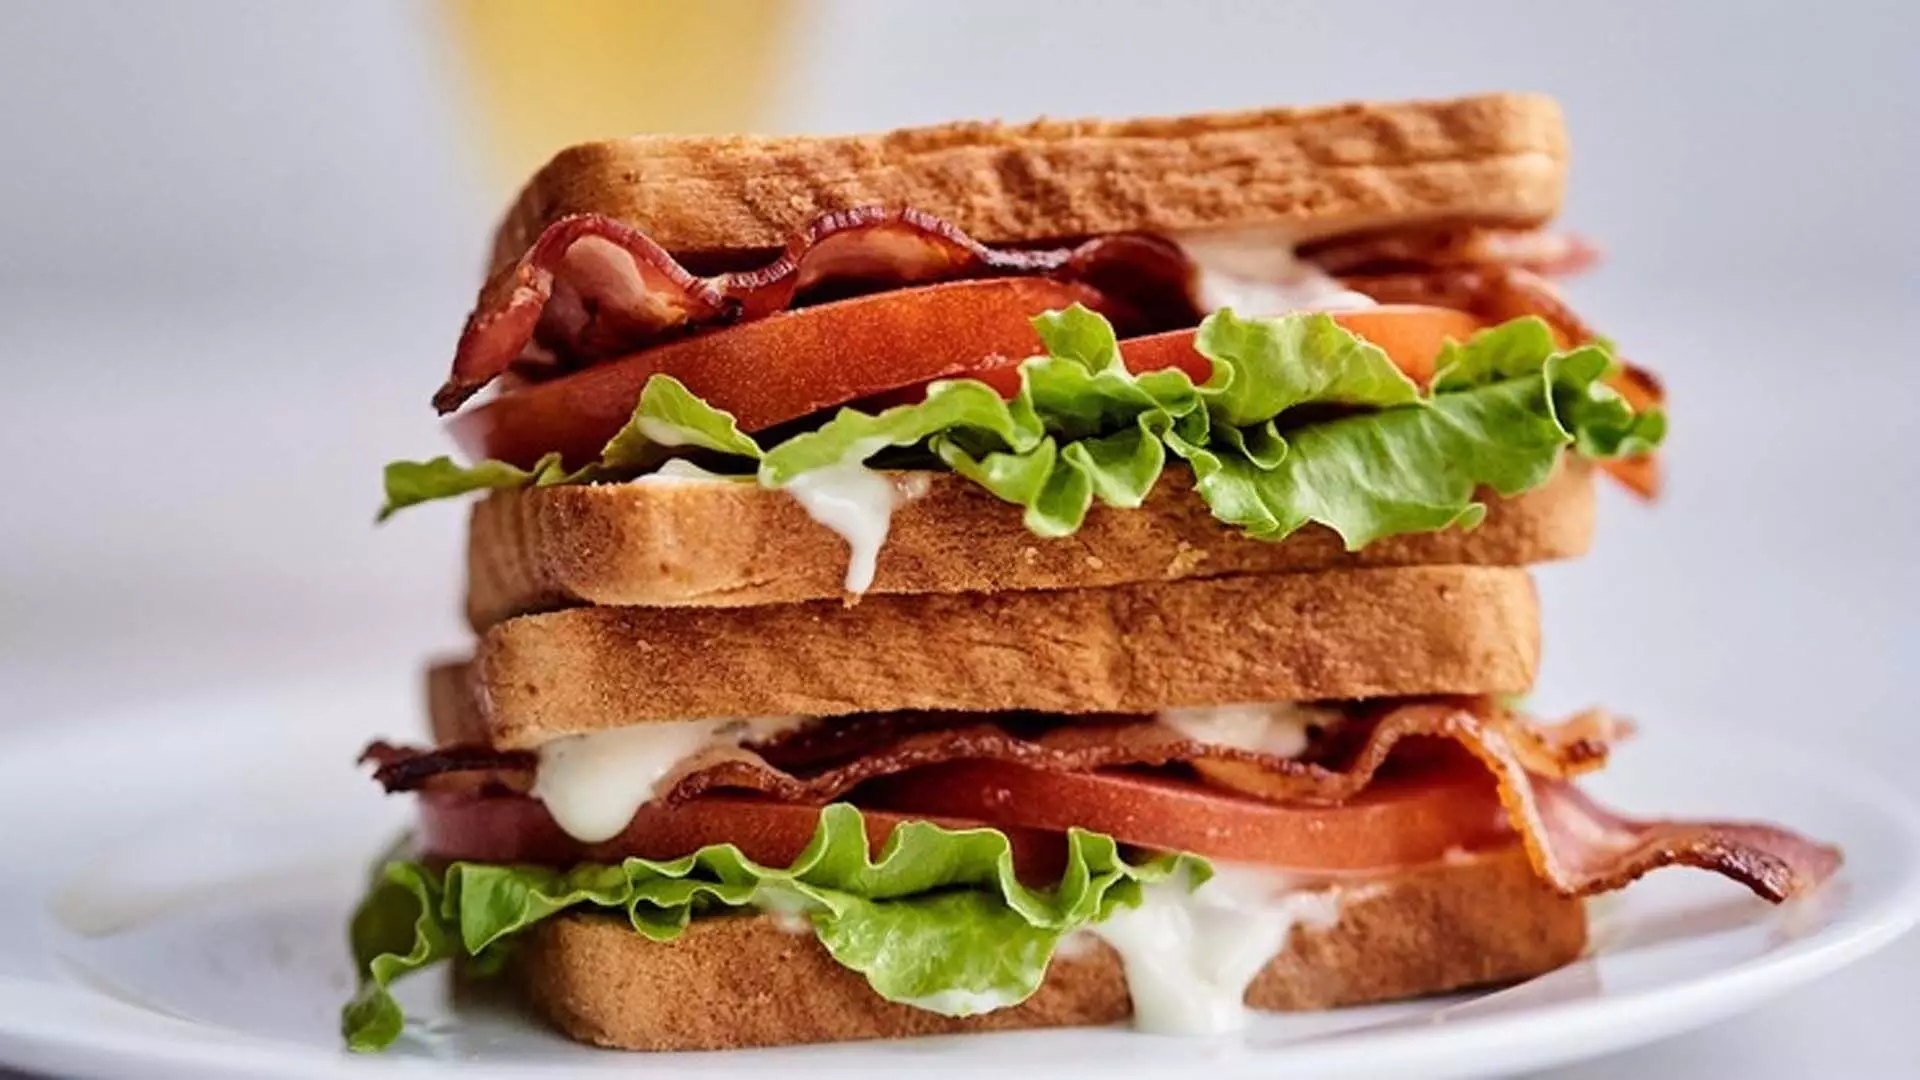 घर पर बनाये स्वादिष्ट और क्लासिक बीएलटी सैंडविच